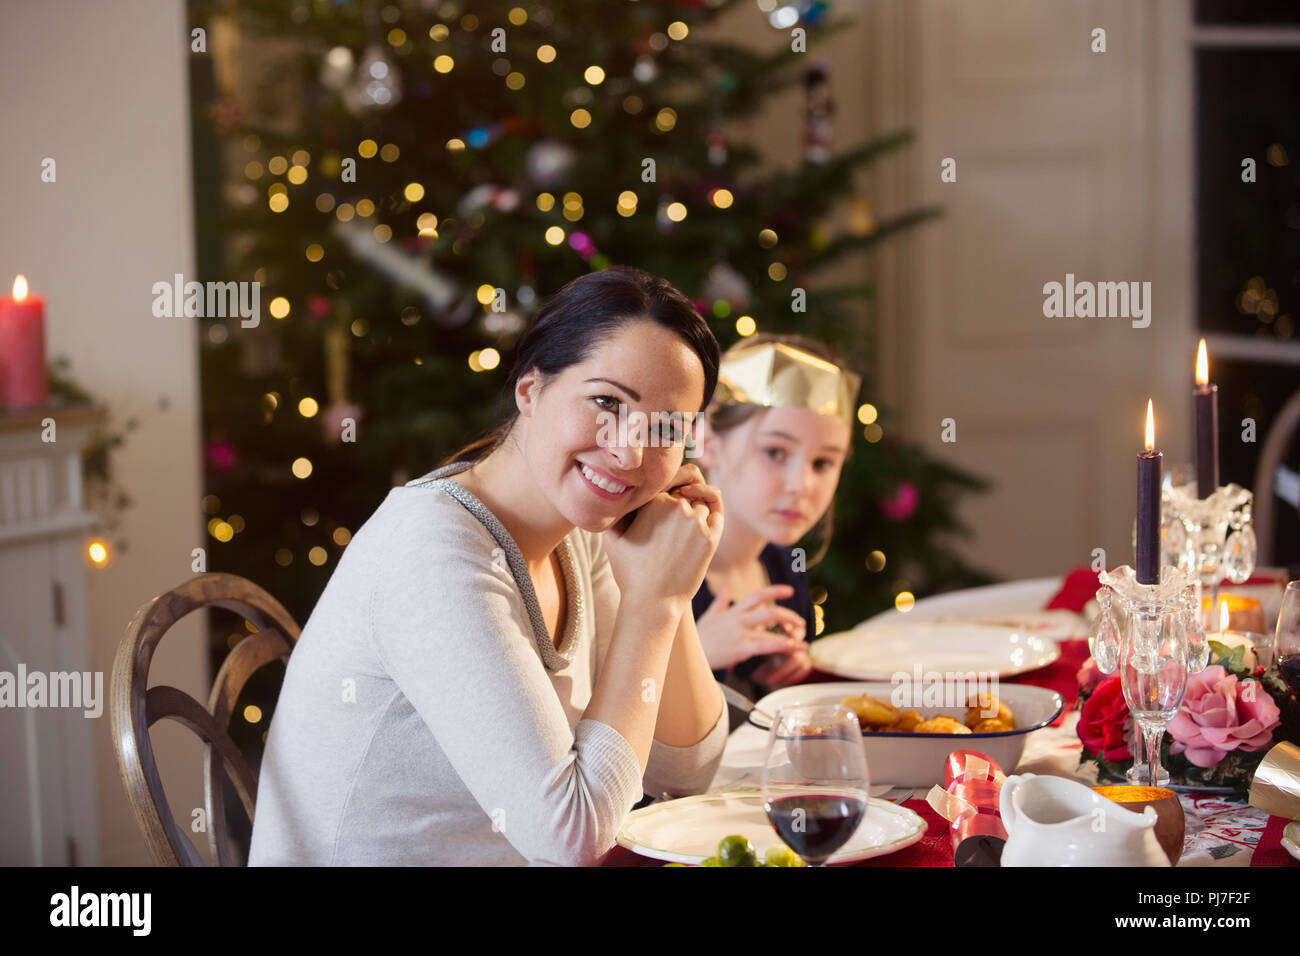 Retrato sonriente, madre e hija disfrutando de la cena de Navidad con velas Foto de stock